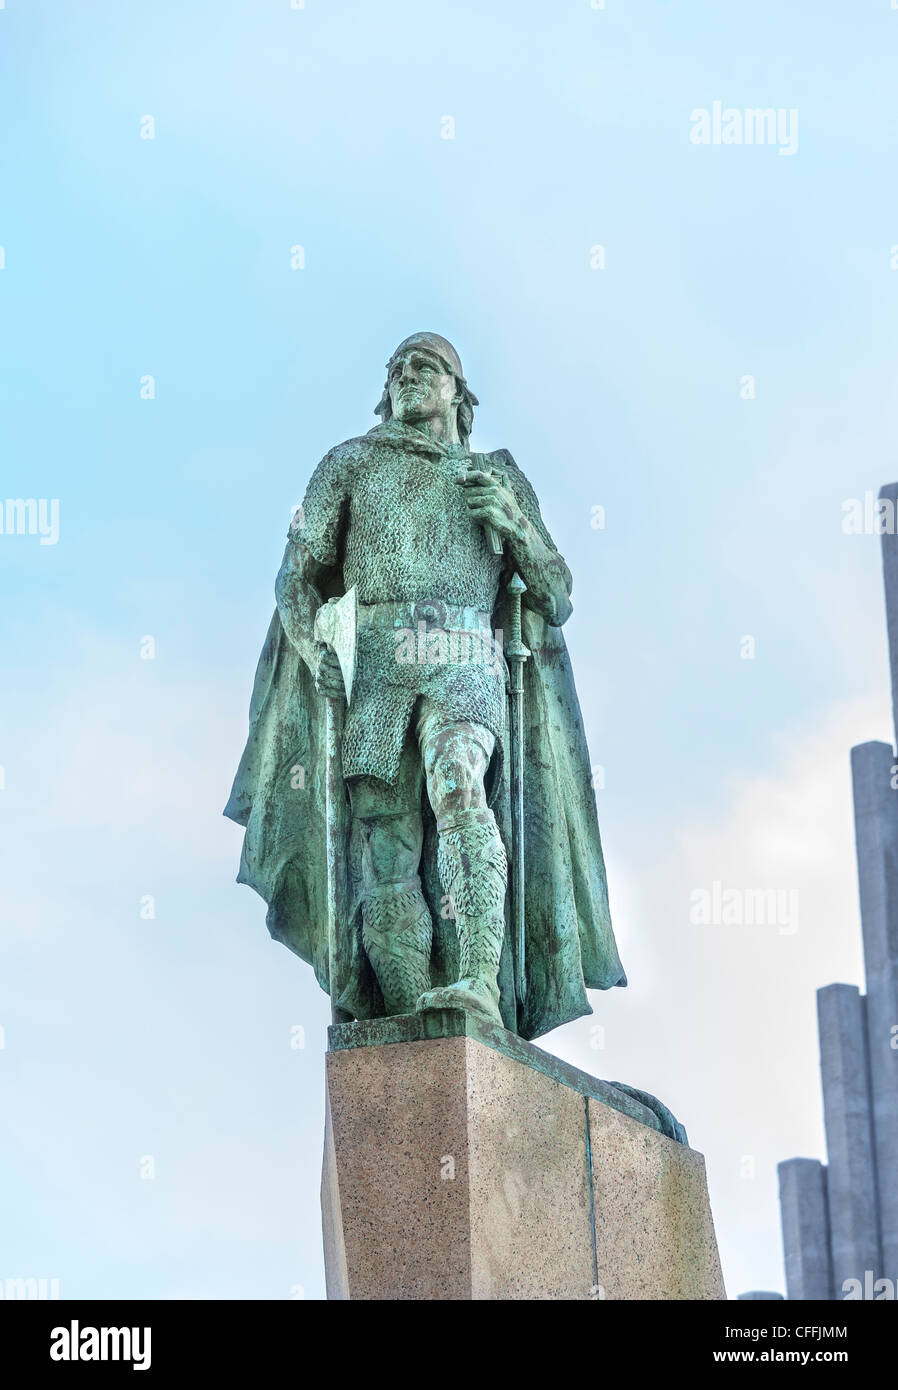 Statua in bronzo che commemora Leif Eriksson in piedi che guarda ad ovest verso l'oceano e America, a Hallgrimskirkja, Reykjavik, la città capitale di Islanda Foto Stock